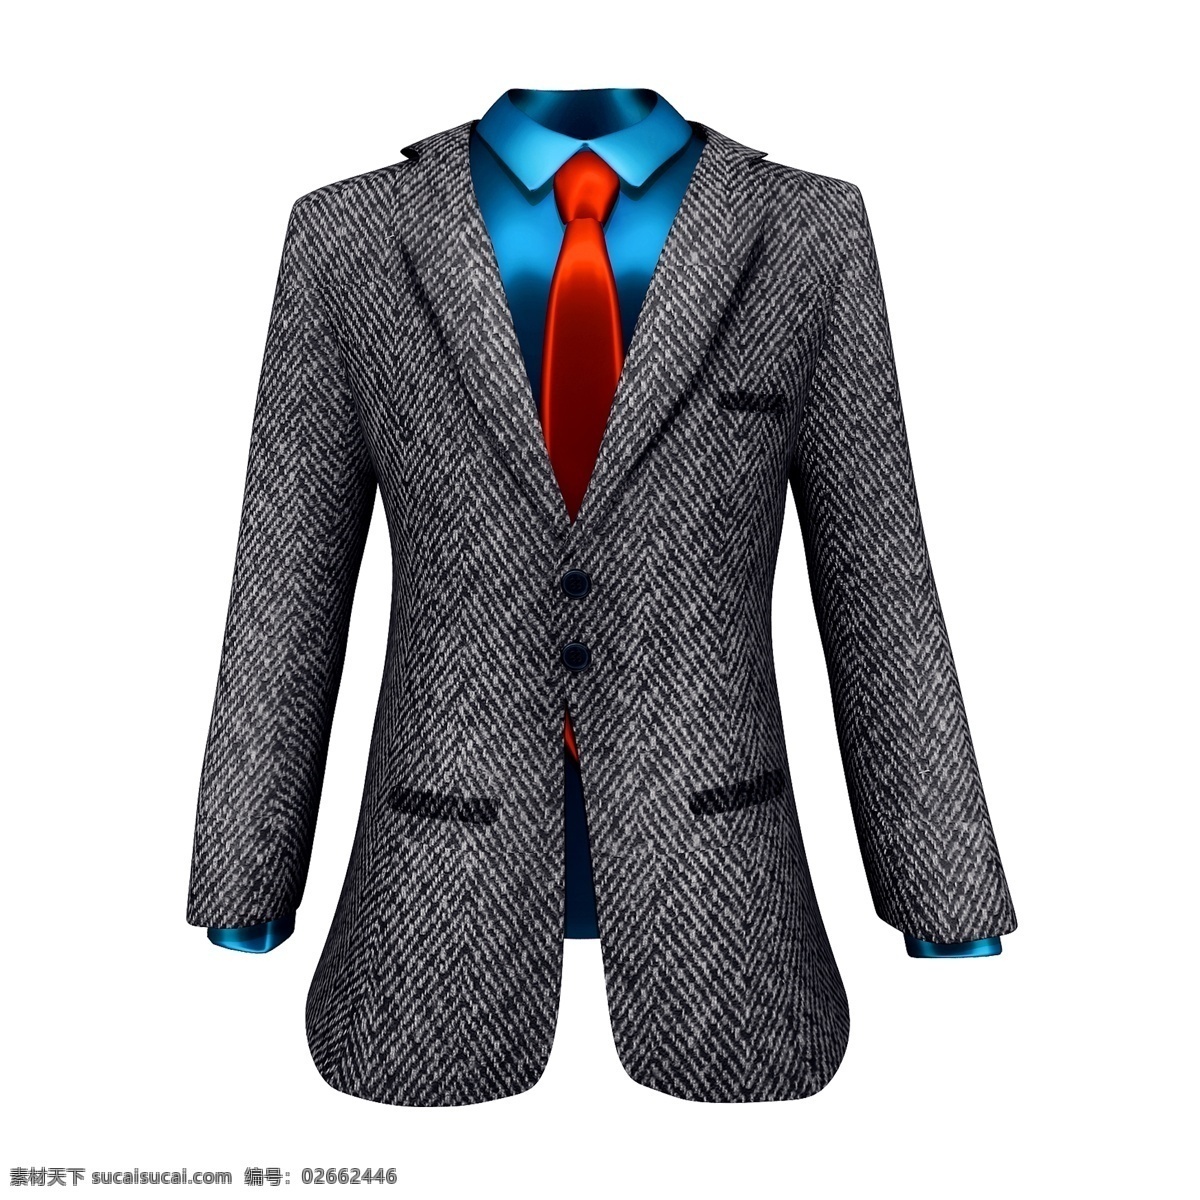 质感 西装 图 立体 仿真 3d 精致 领带 父亲节 新衣服 礼物 创意 套图 png图